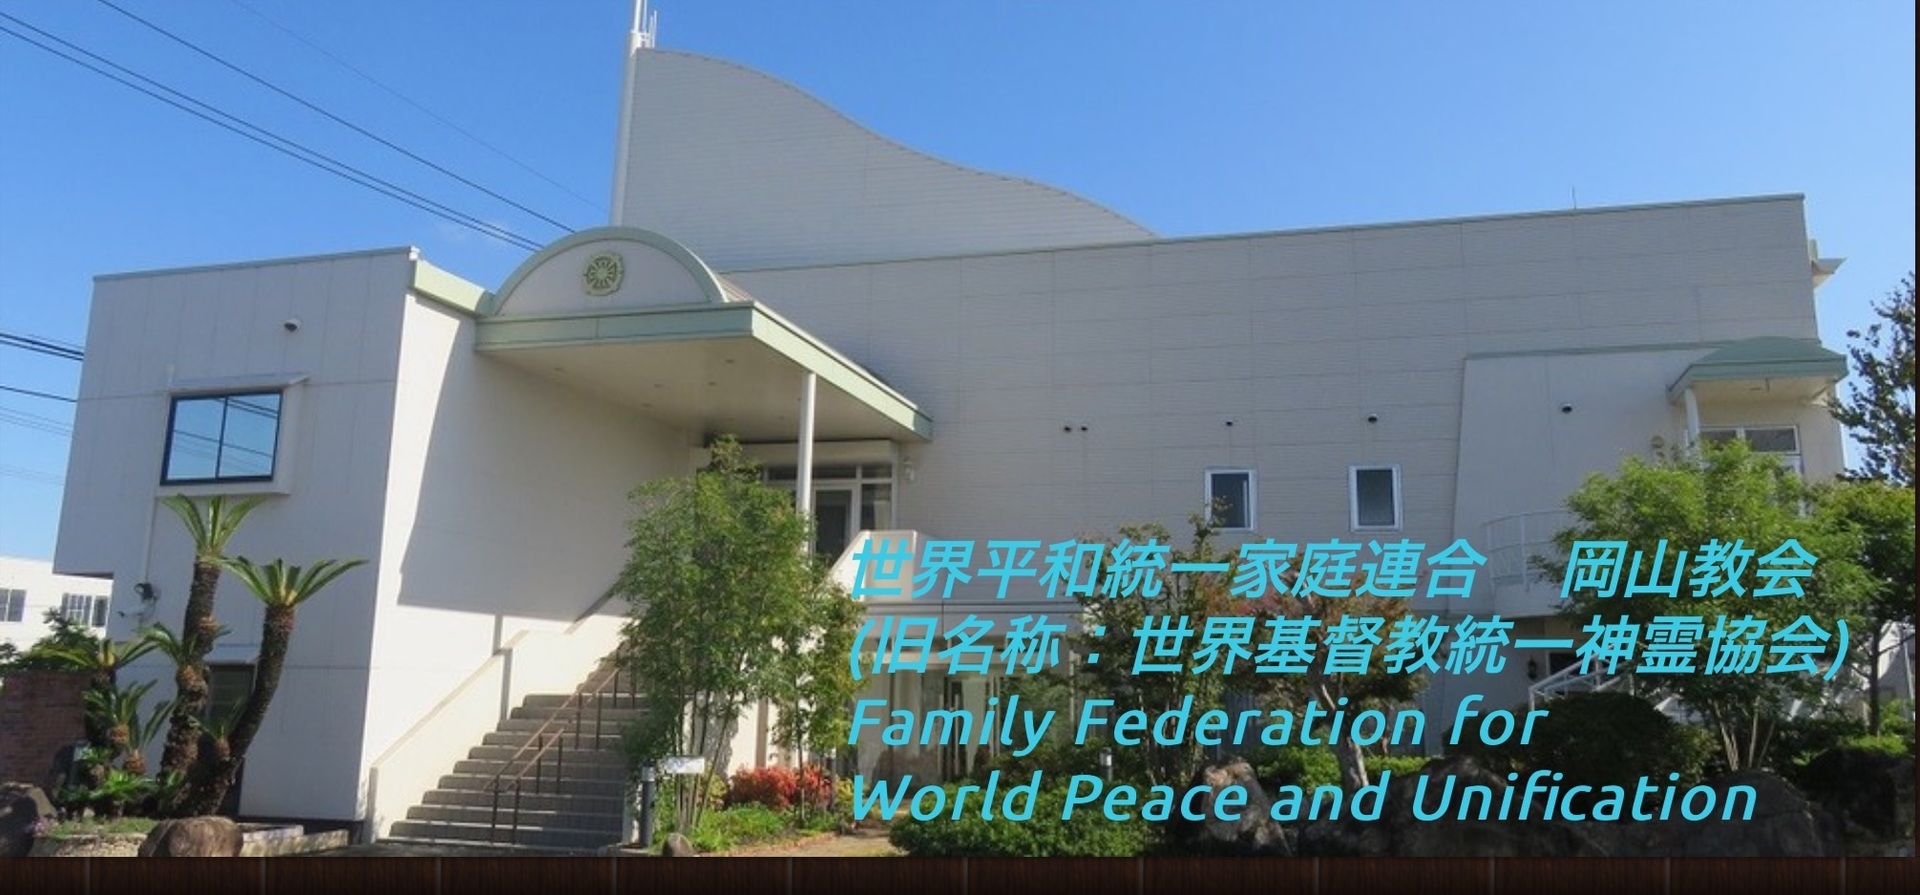 世界平和統一家庭連合 岡山教会 家庭連合 統一教会 訪問紀行